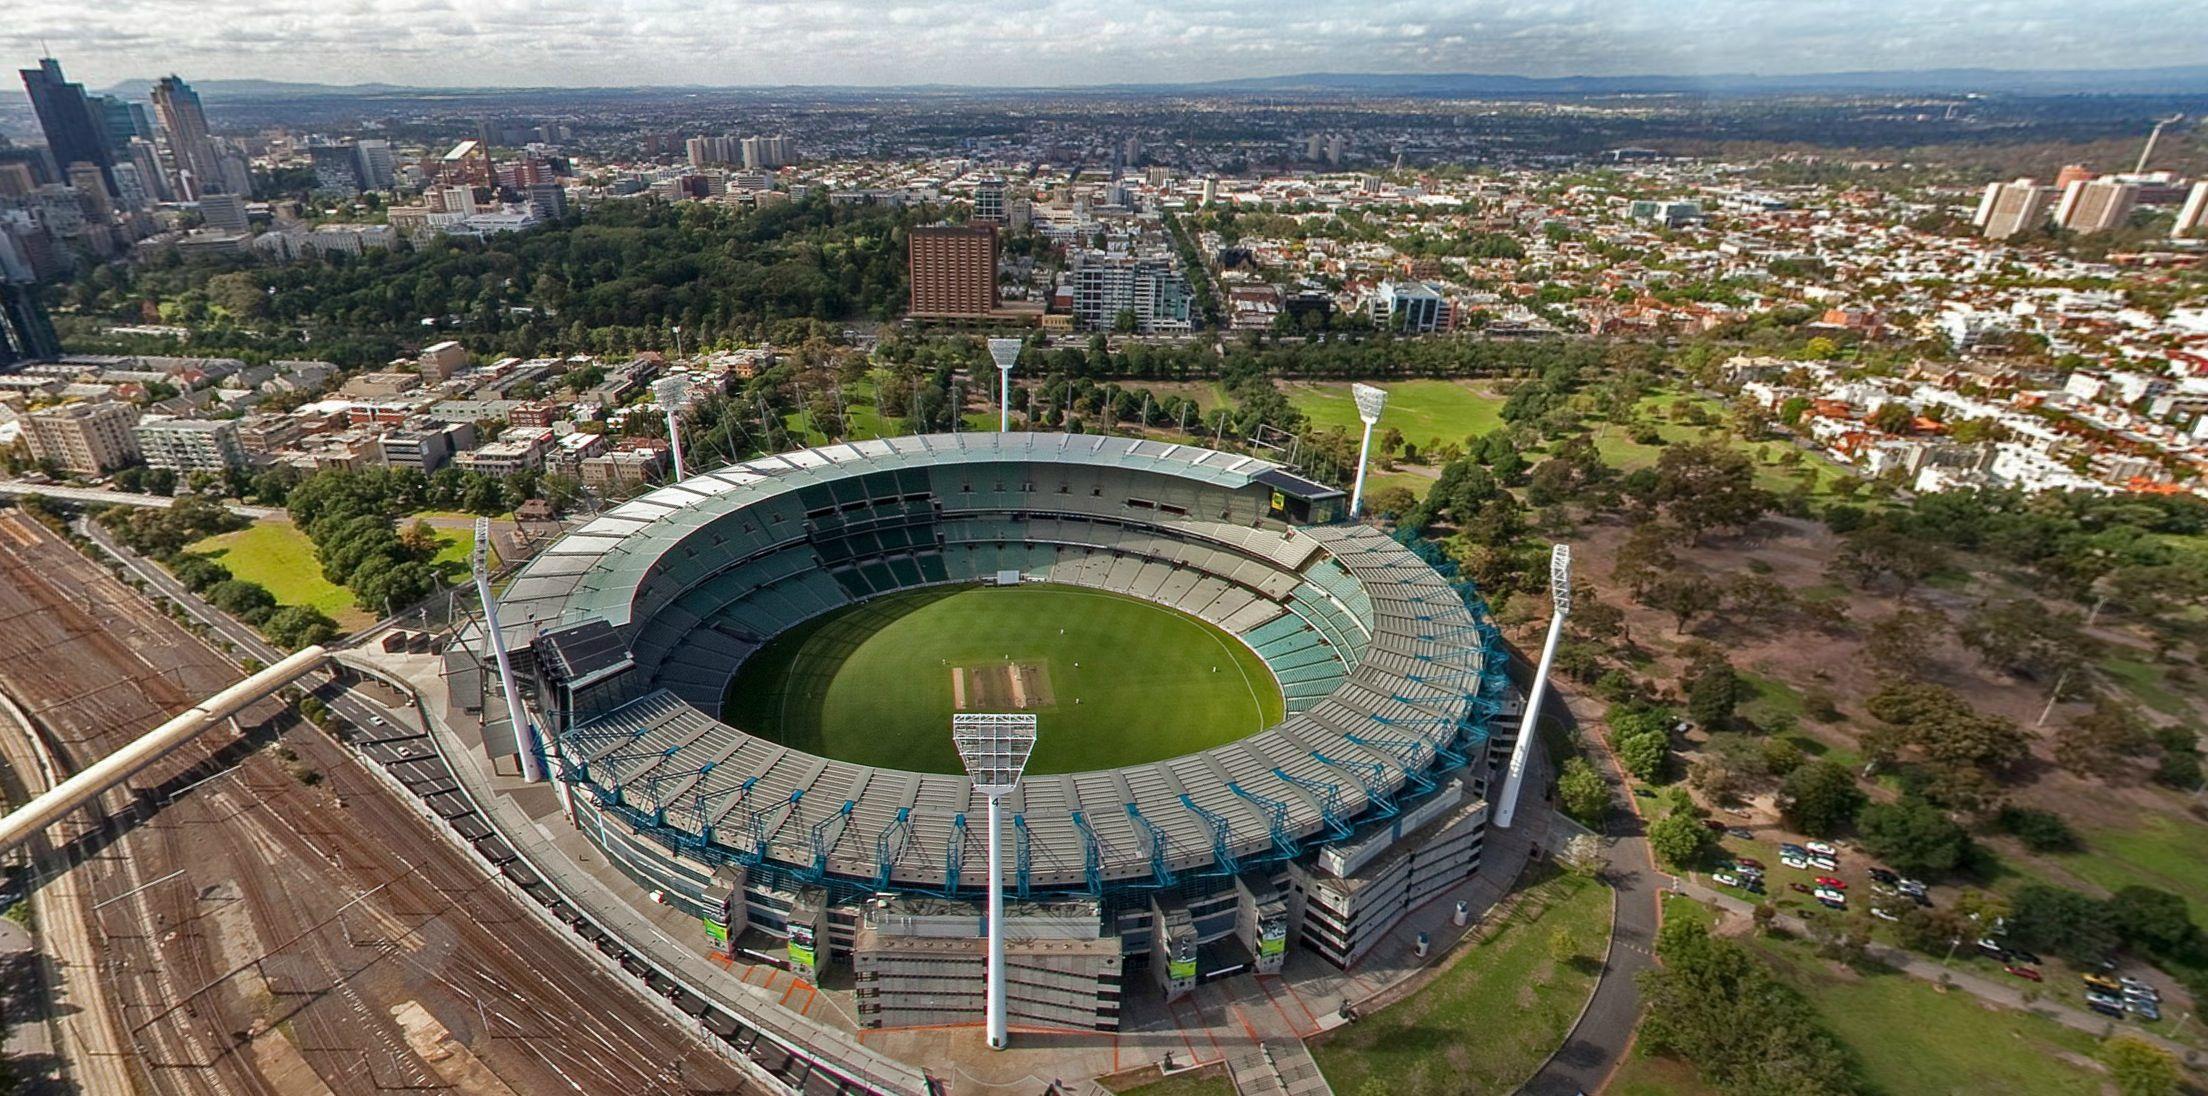 Крикет граунд. Стадион крикет Граунд. Мельбурн крикет Граунд Мельбурн. Мельбурн стадион. Мельбурн крикет Граунд стадион razrez.